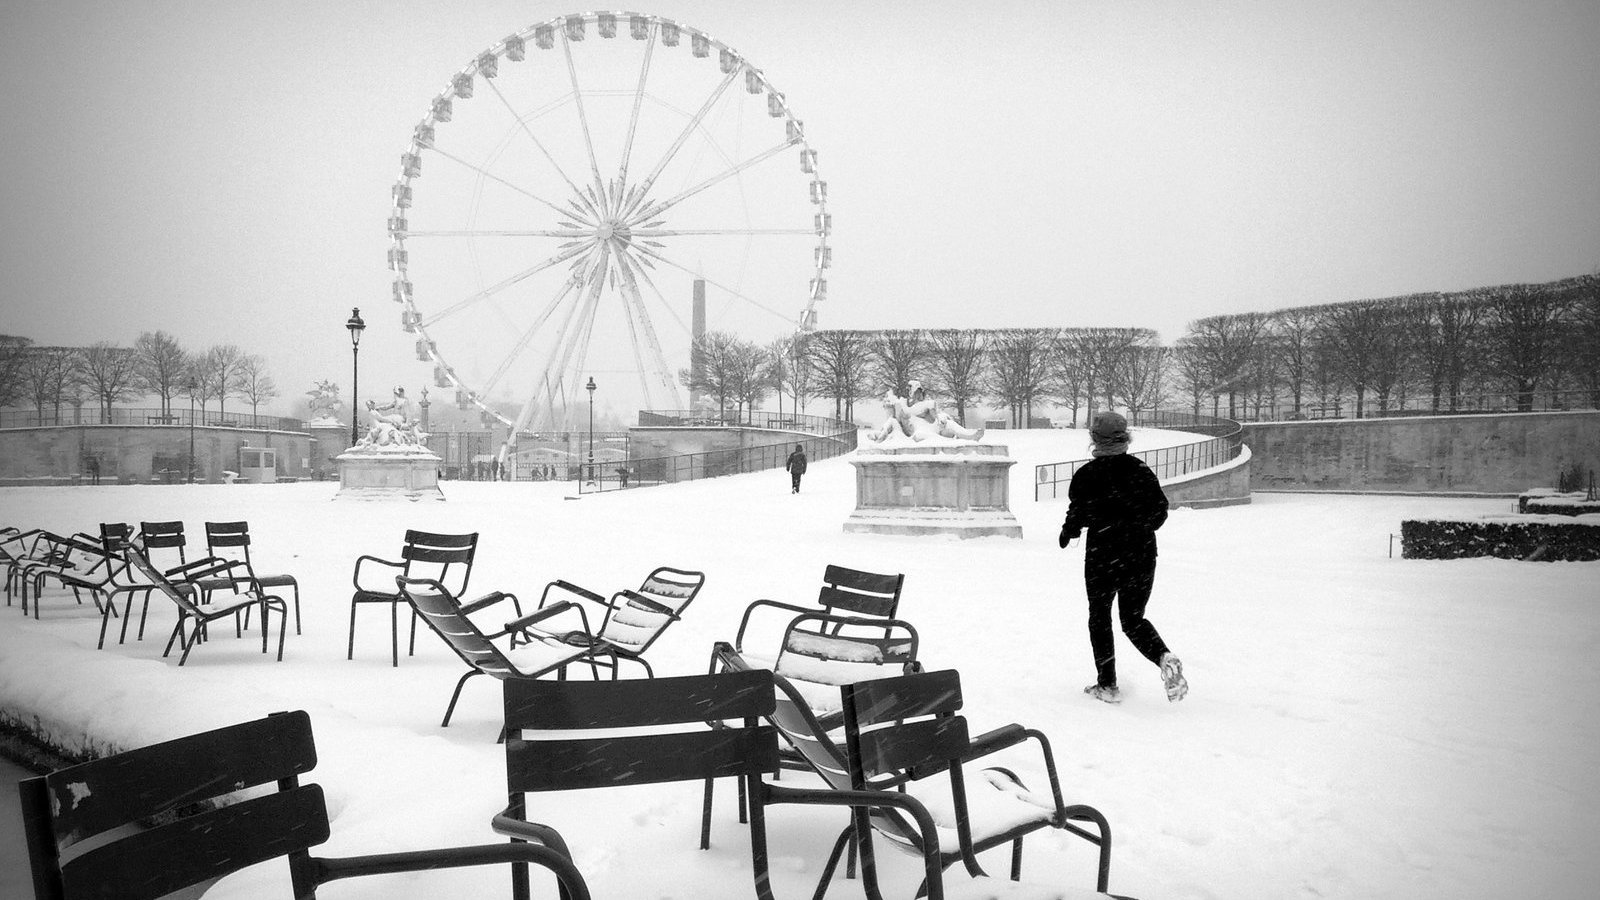 Snow in Paris ferris wheel